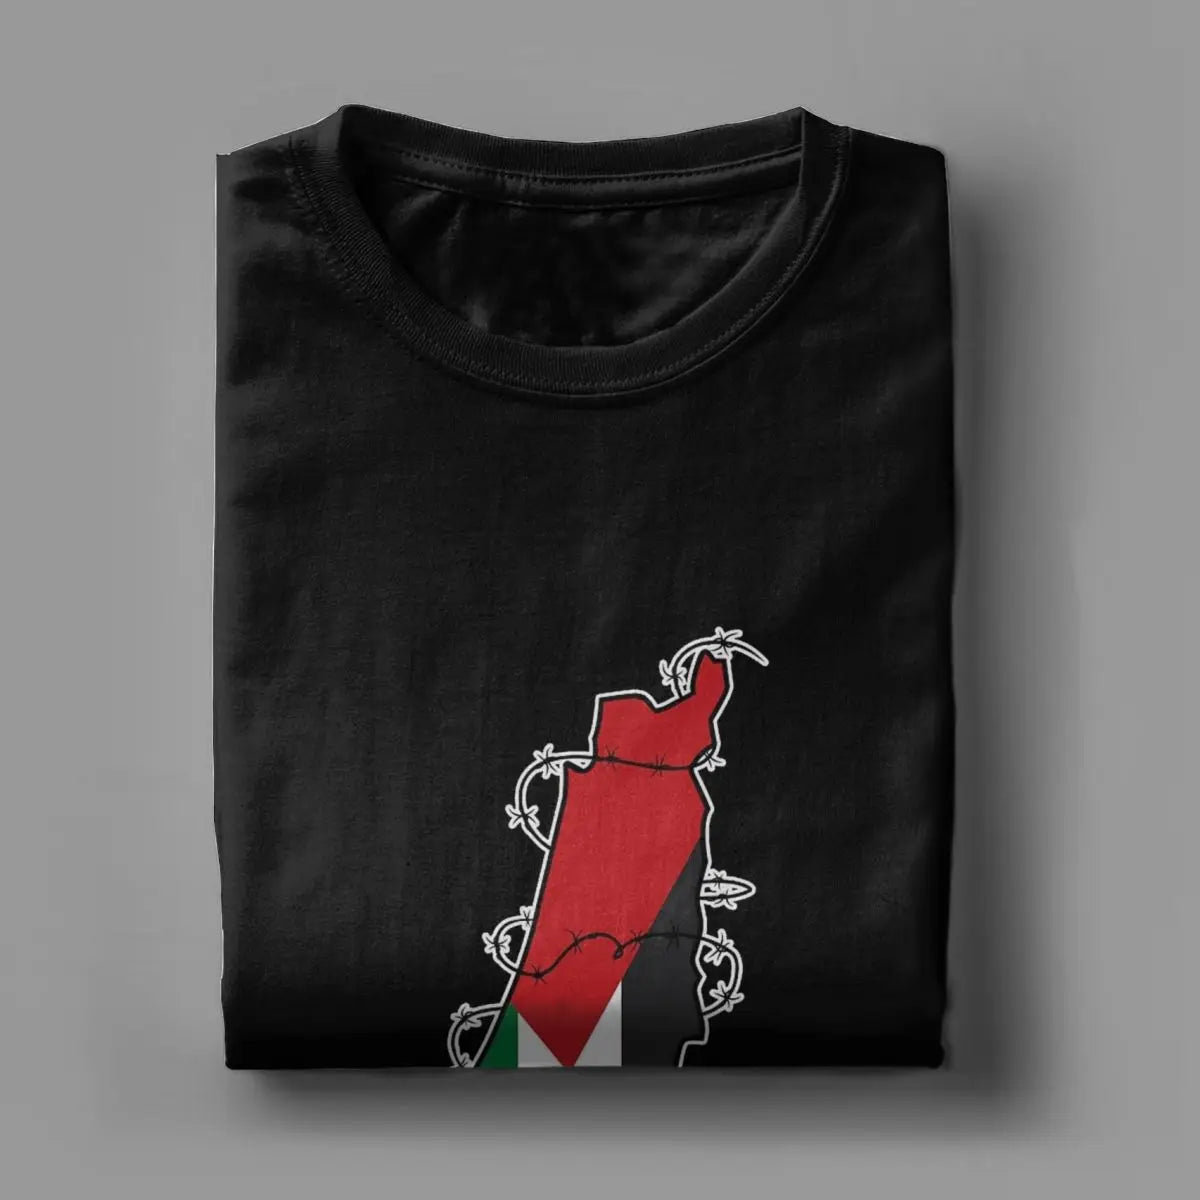 Tee Shirt Palestine